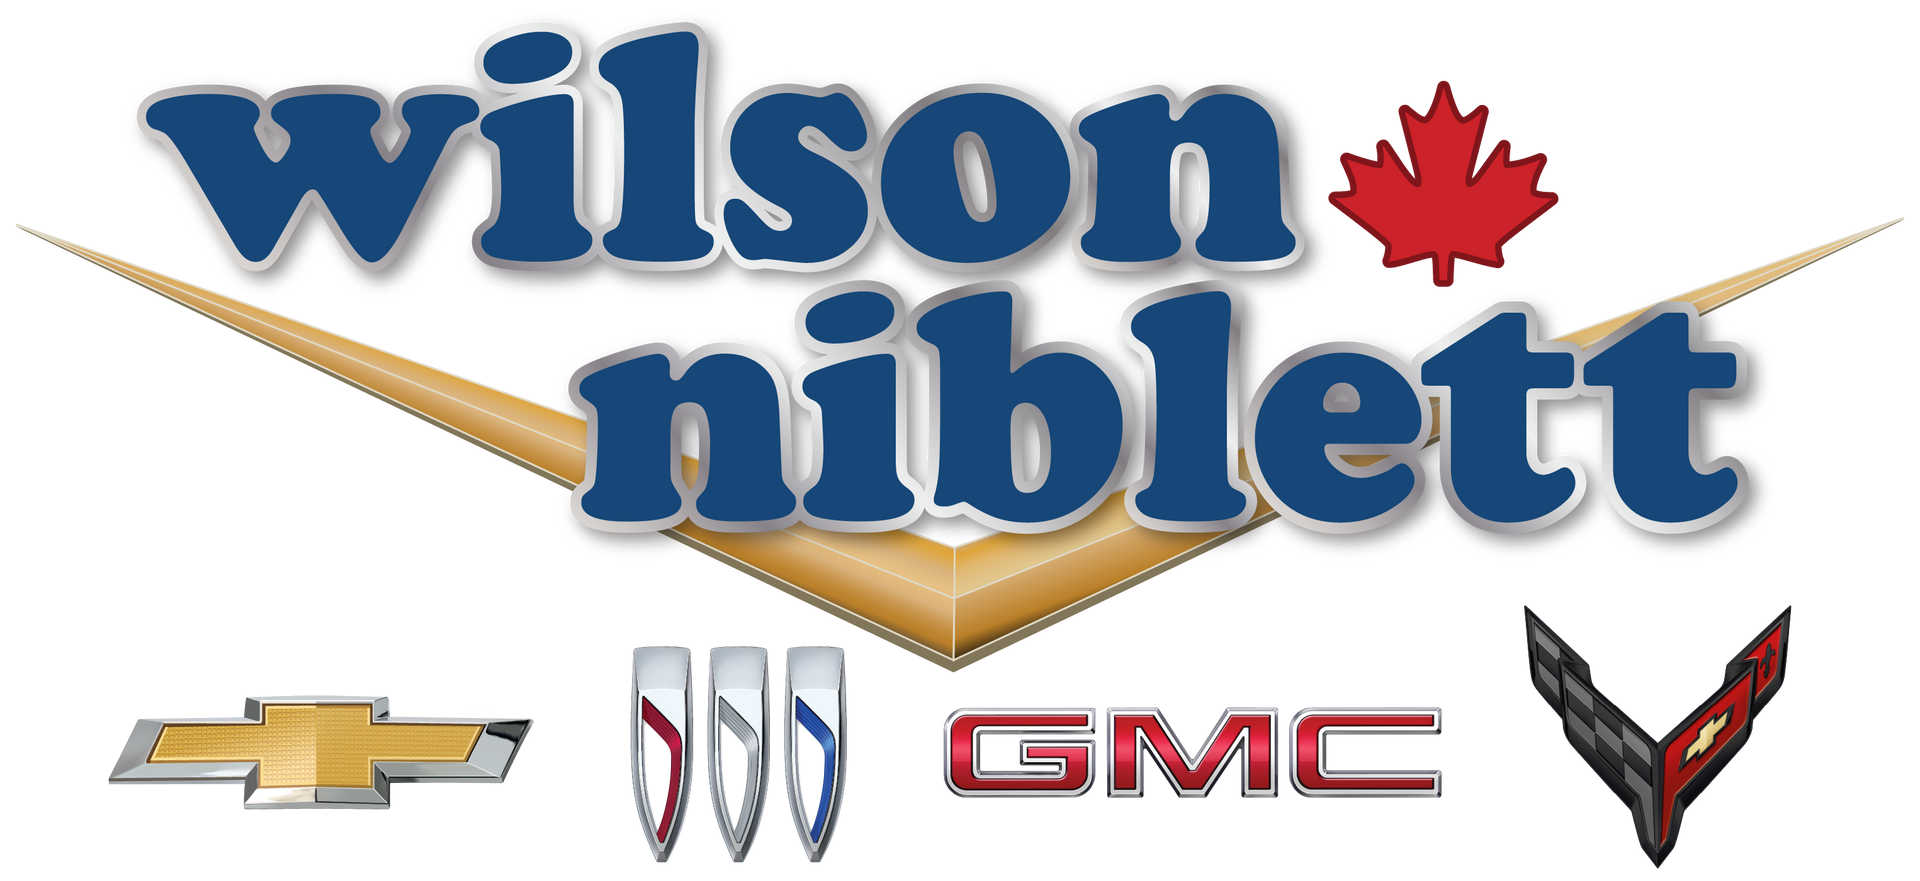 Wilson-Niblett Motors logo